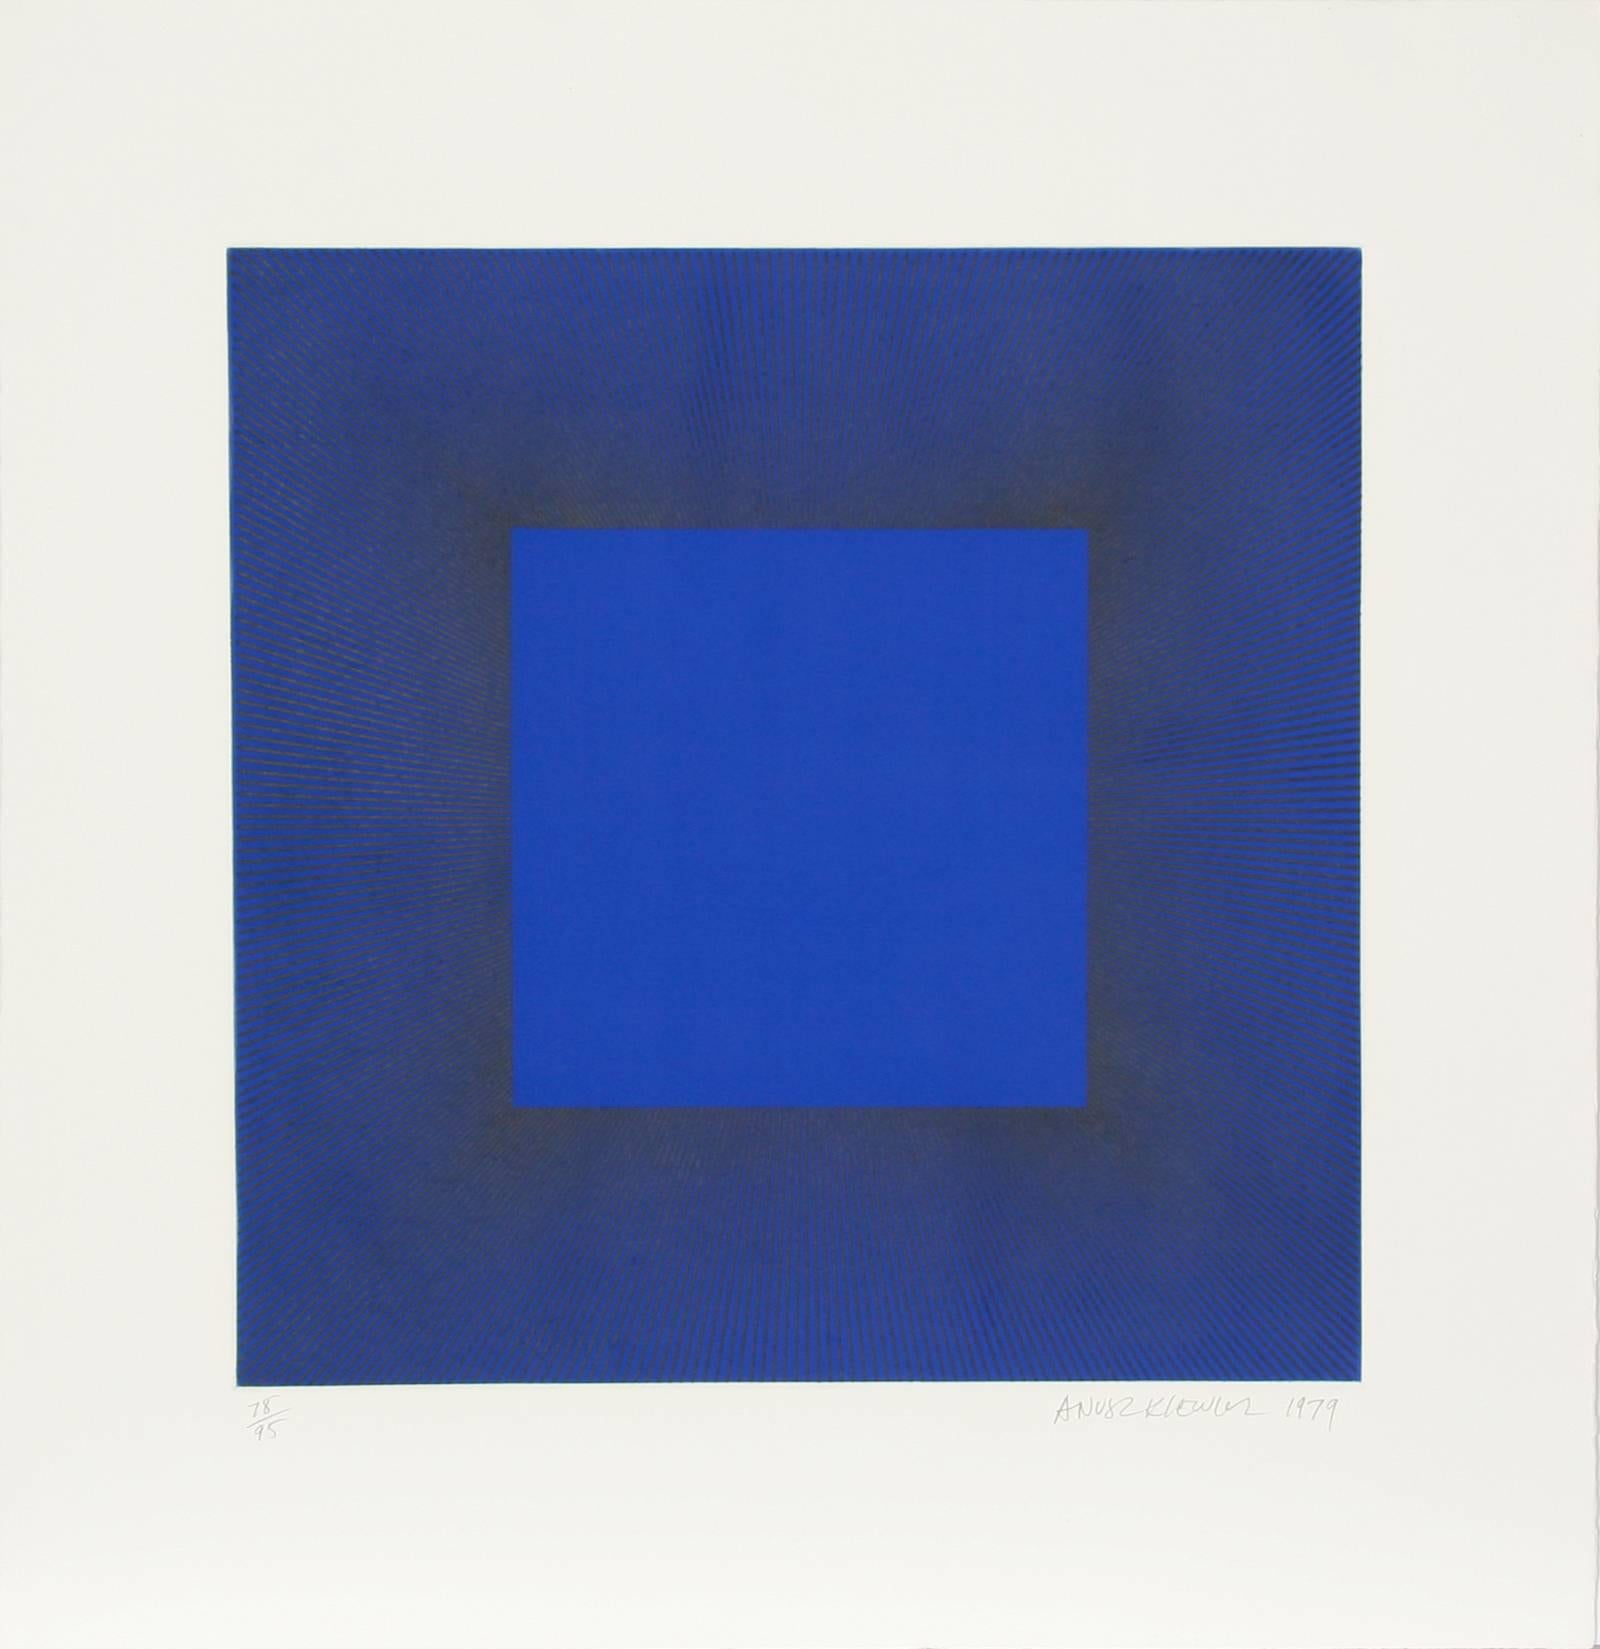 Anuszkiewicz, der als einer der wichtigsten Vertreter der Op-Art-Bewegung gilt, befasst sich mit den optischen Veränderungen, die auftreten, wenn verschiedene Farben mit hoher Intensität auf dieselben geometrischen Konfigurationen aufgetragen